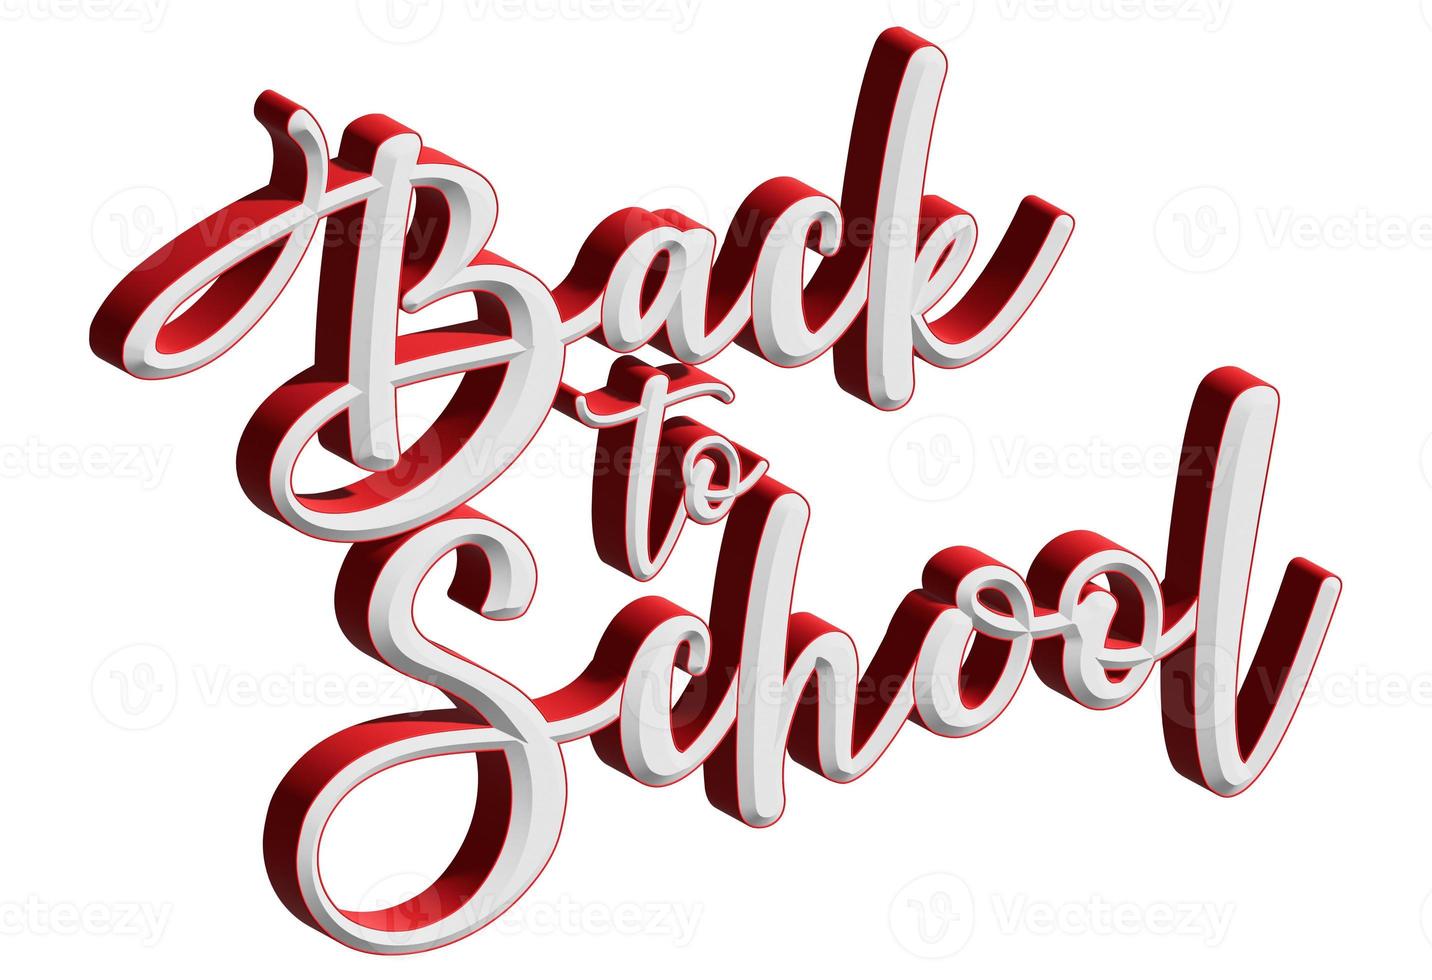 backtoschool 3d reto text com vermelho e branco foto